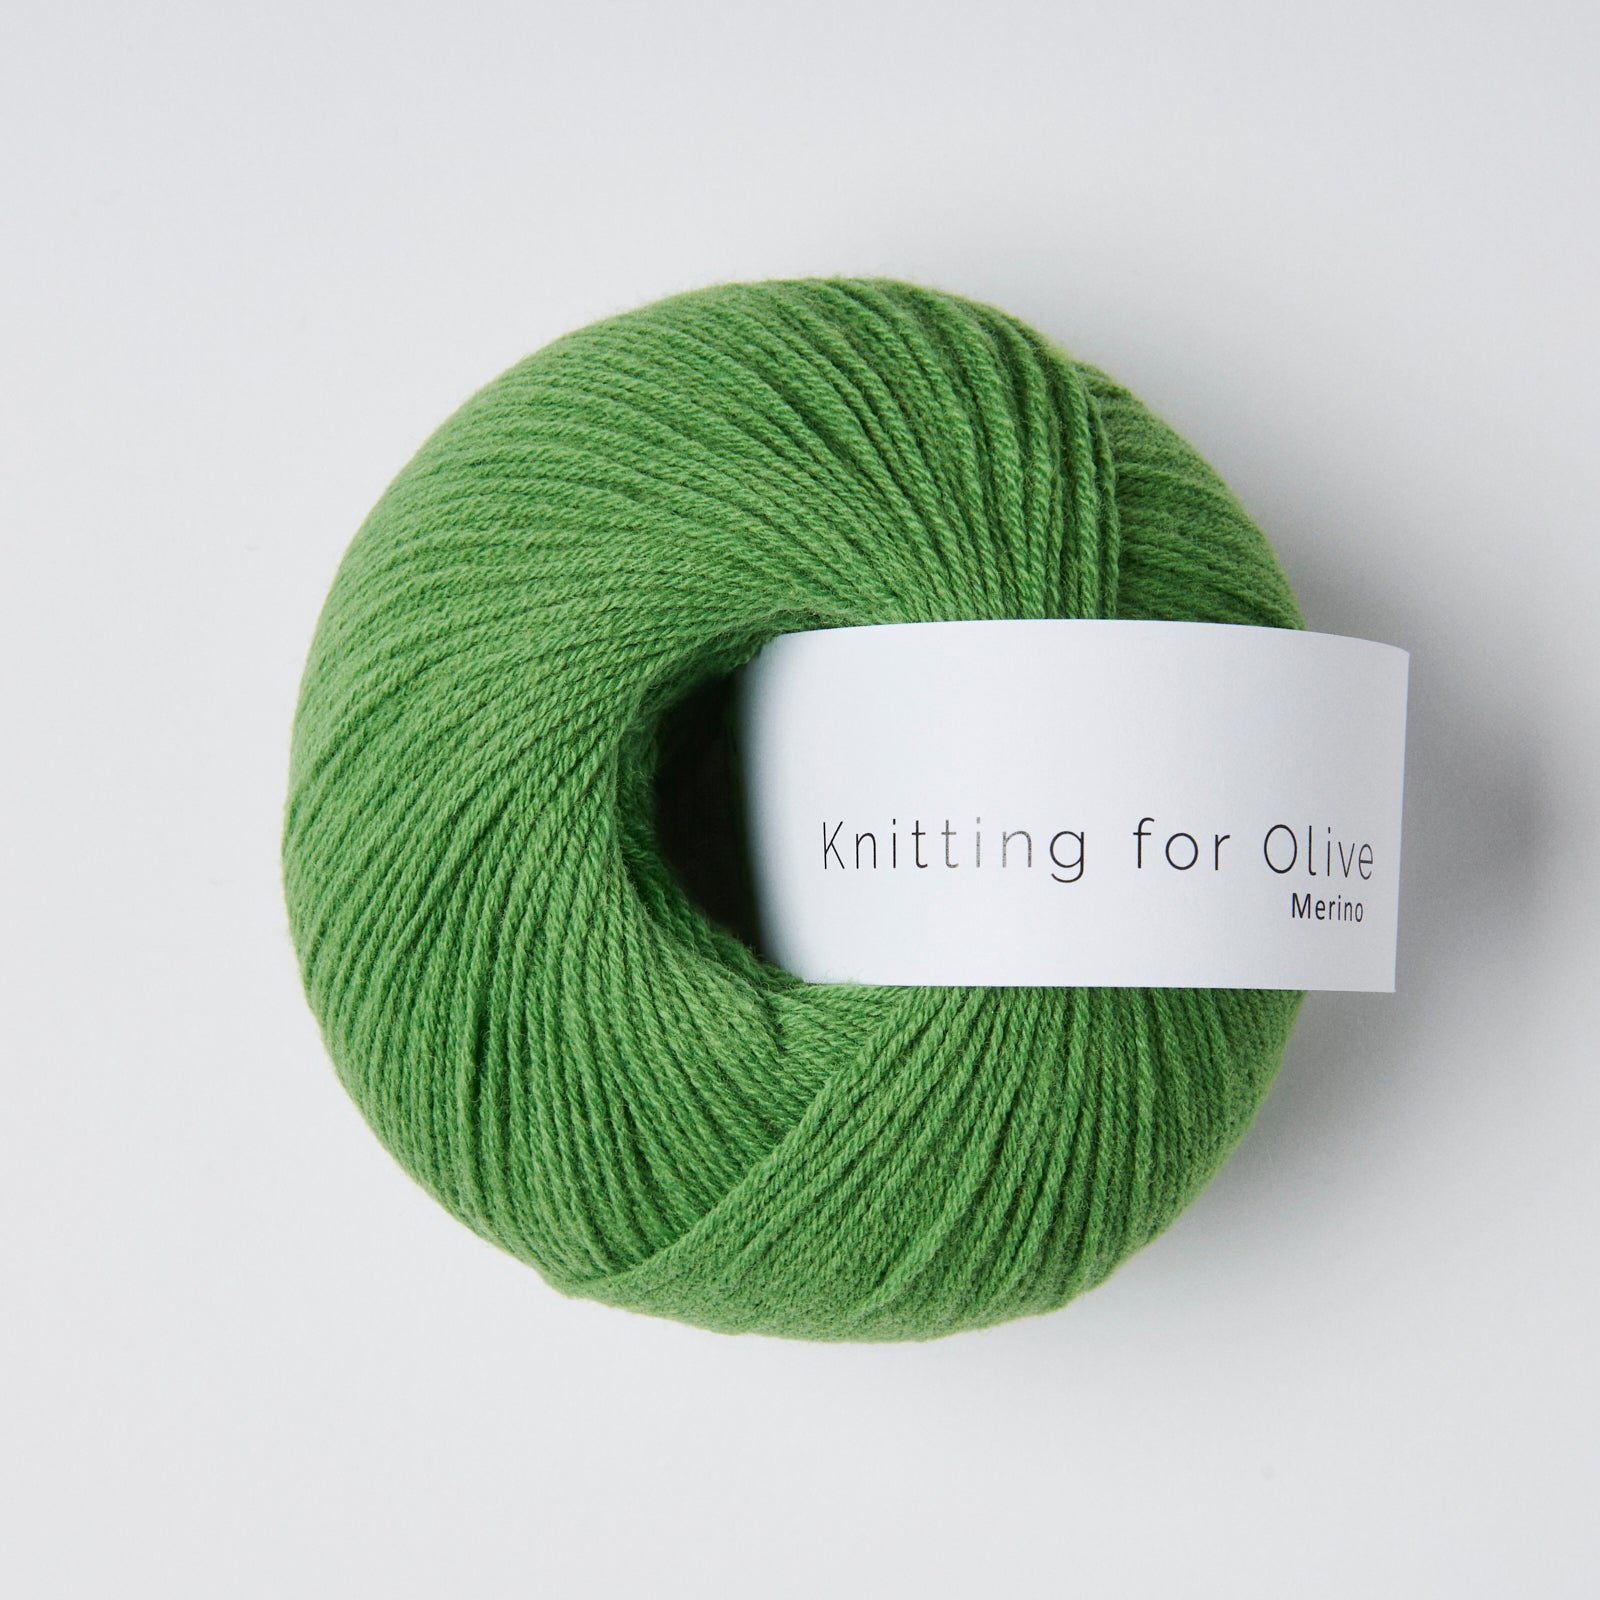 Knitting for Olive Merino - Clover Green